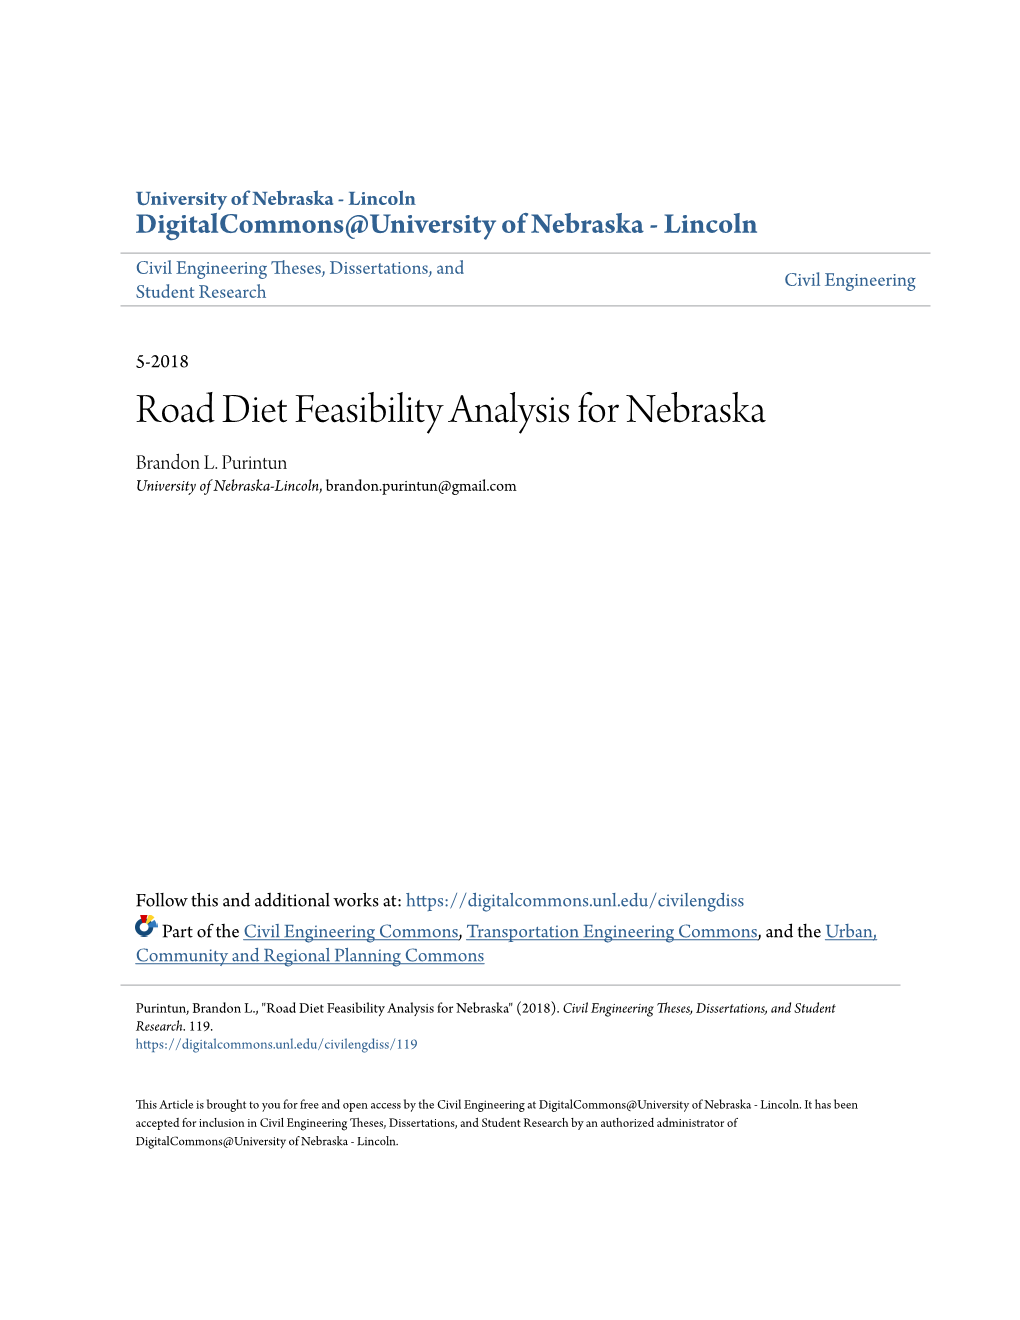 Road Diet Feasibility Analysis for Nebraska Brandon L